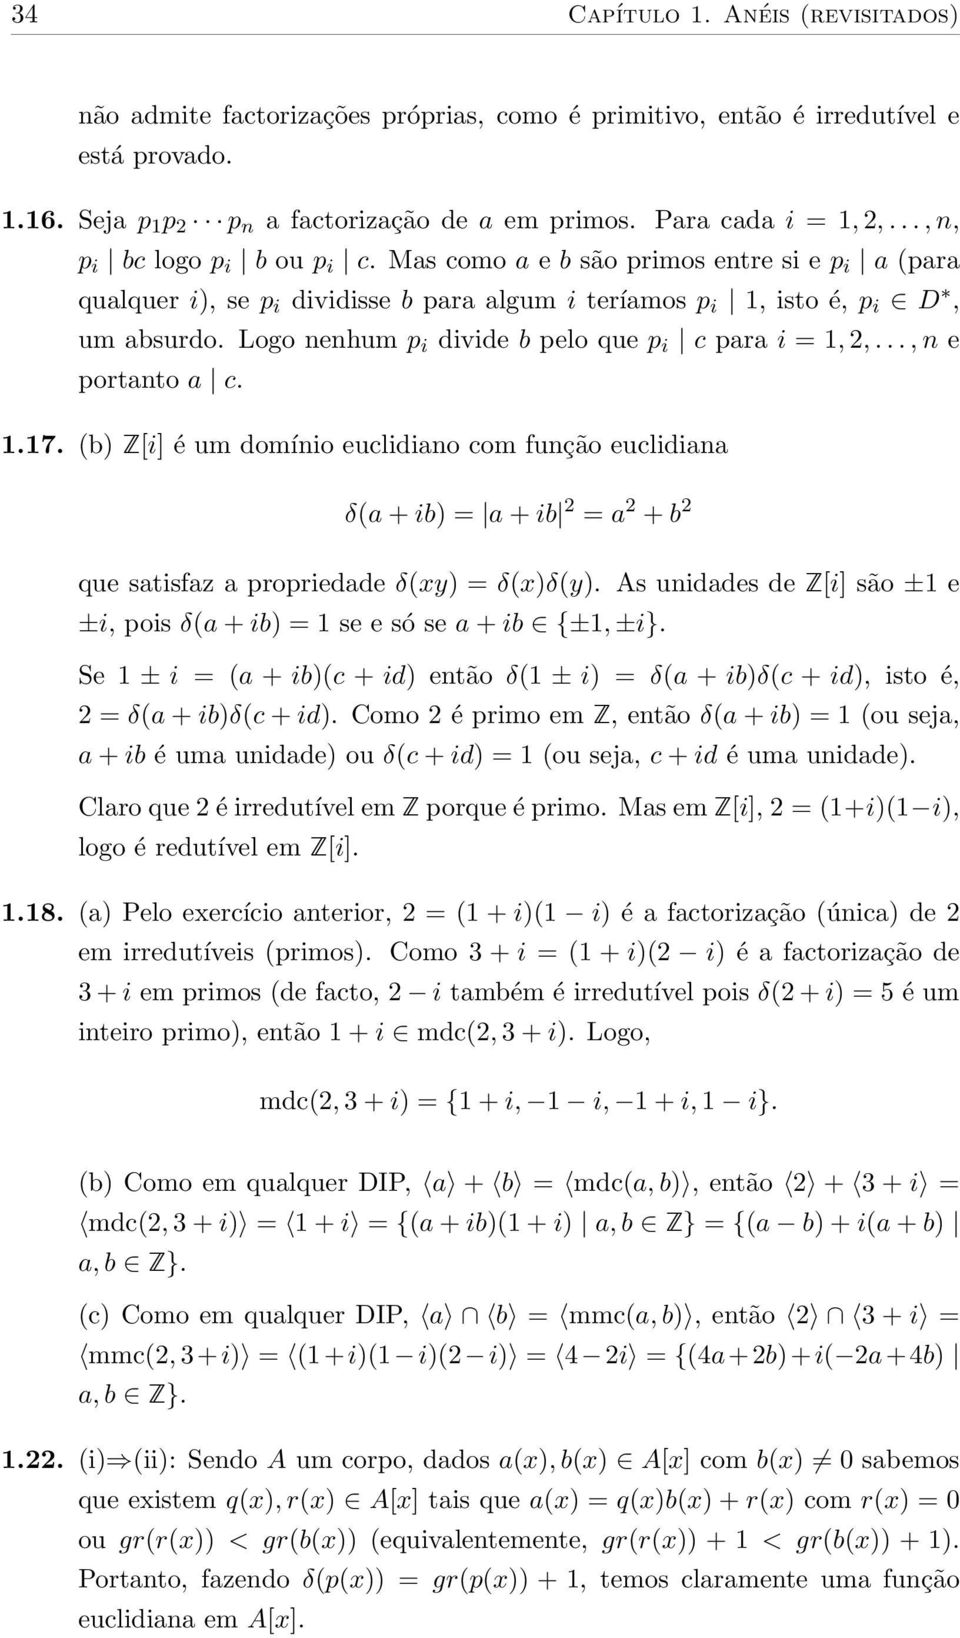 Logo nenhum p i divide b pelo que p i c para i = 1, 2,..., n e portanto a c. 1.17.